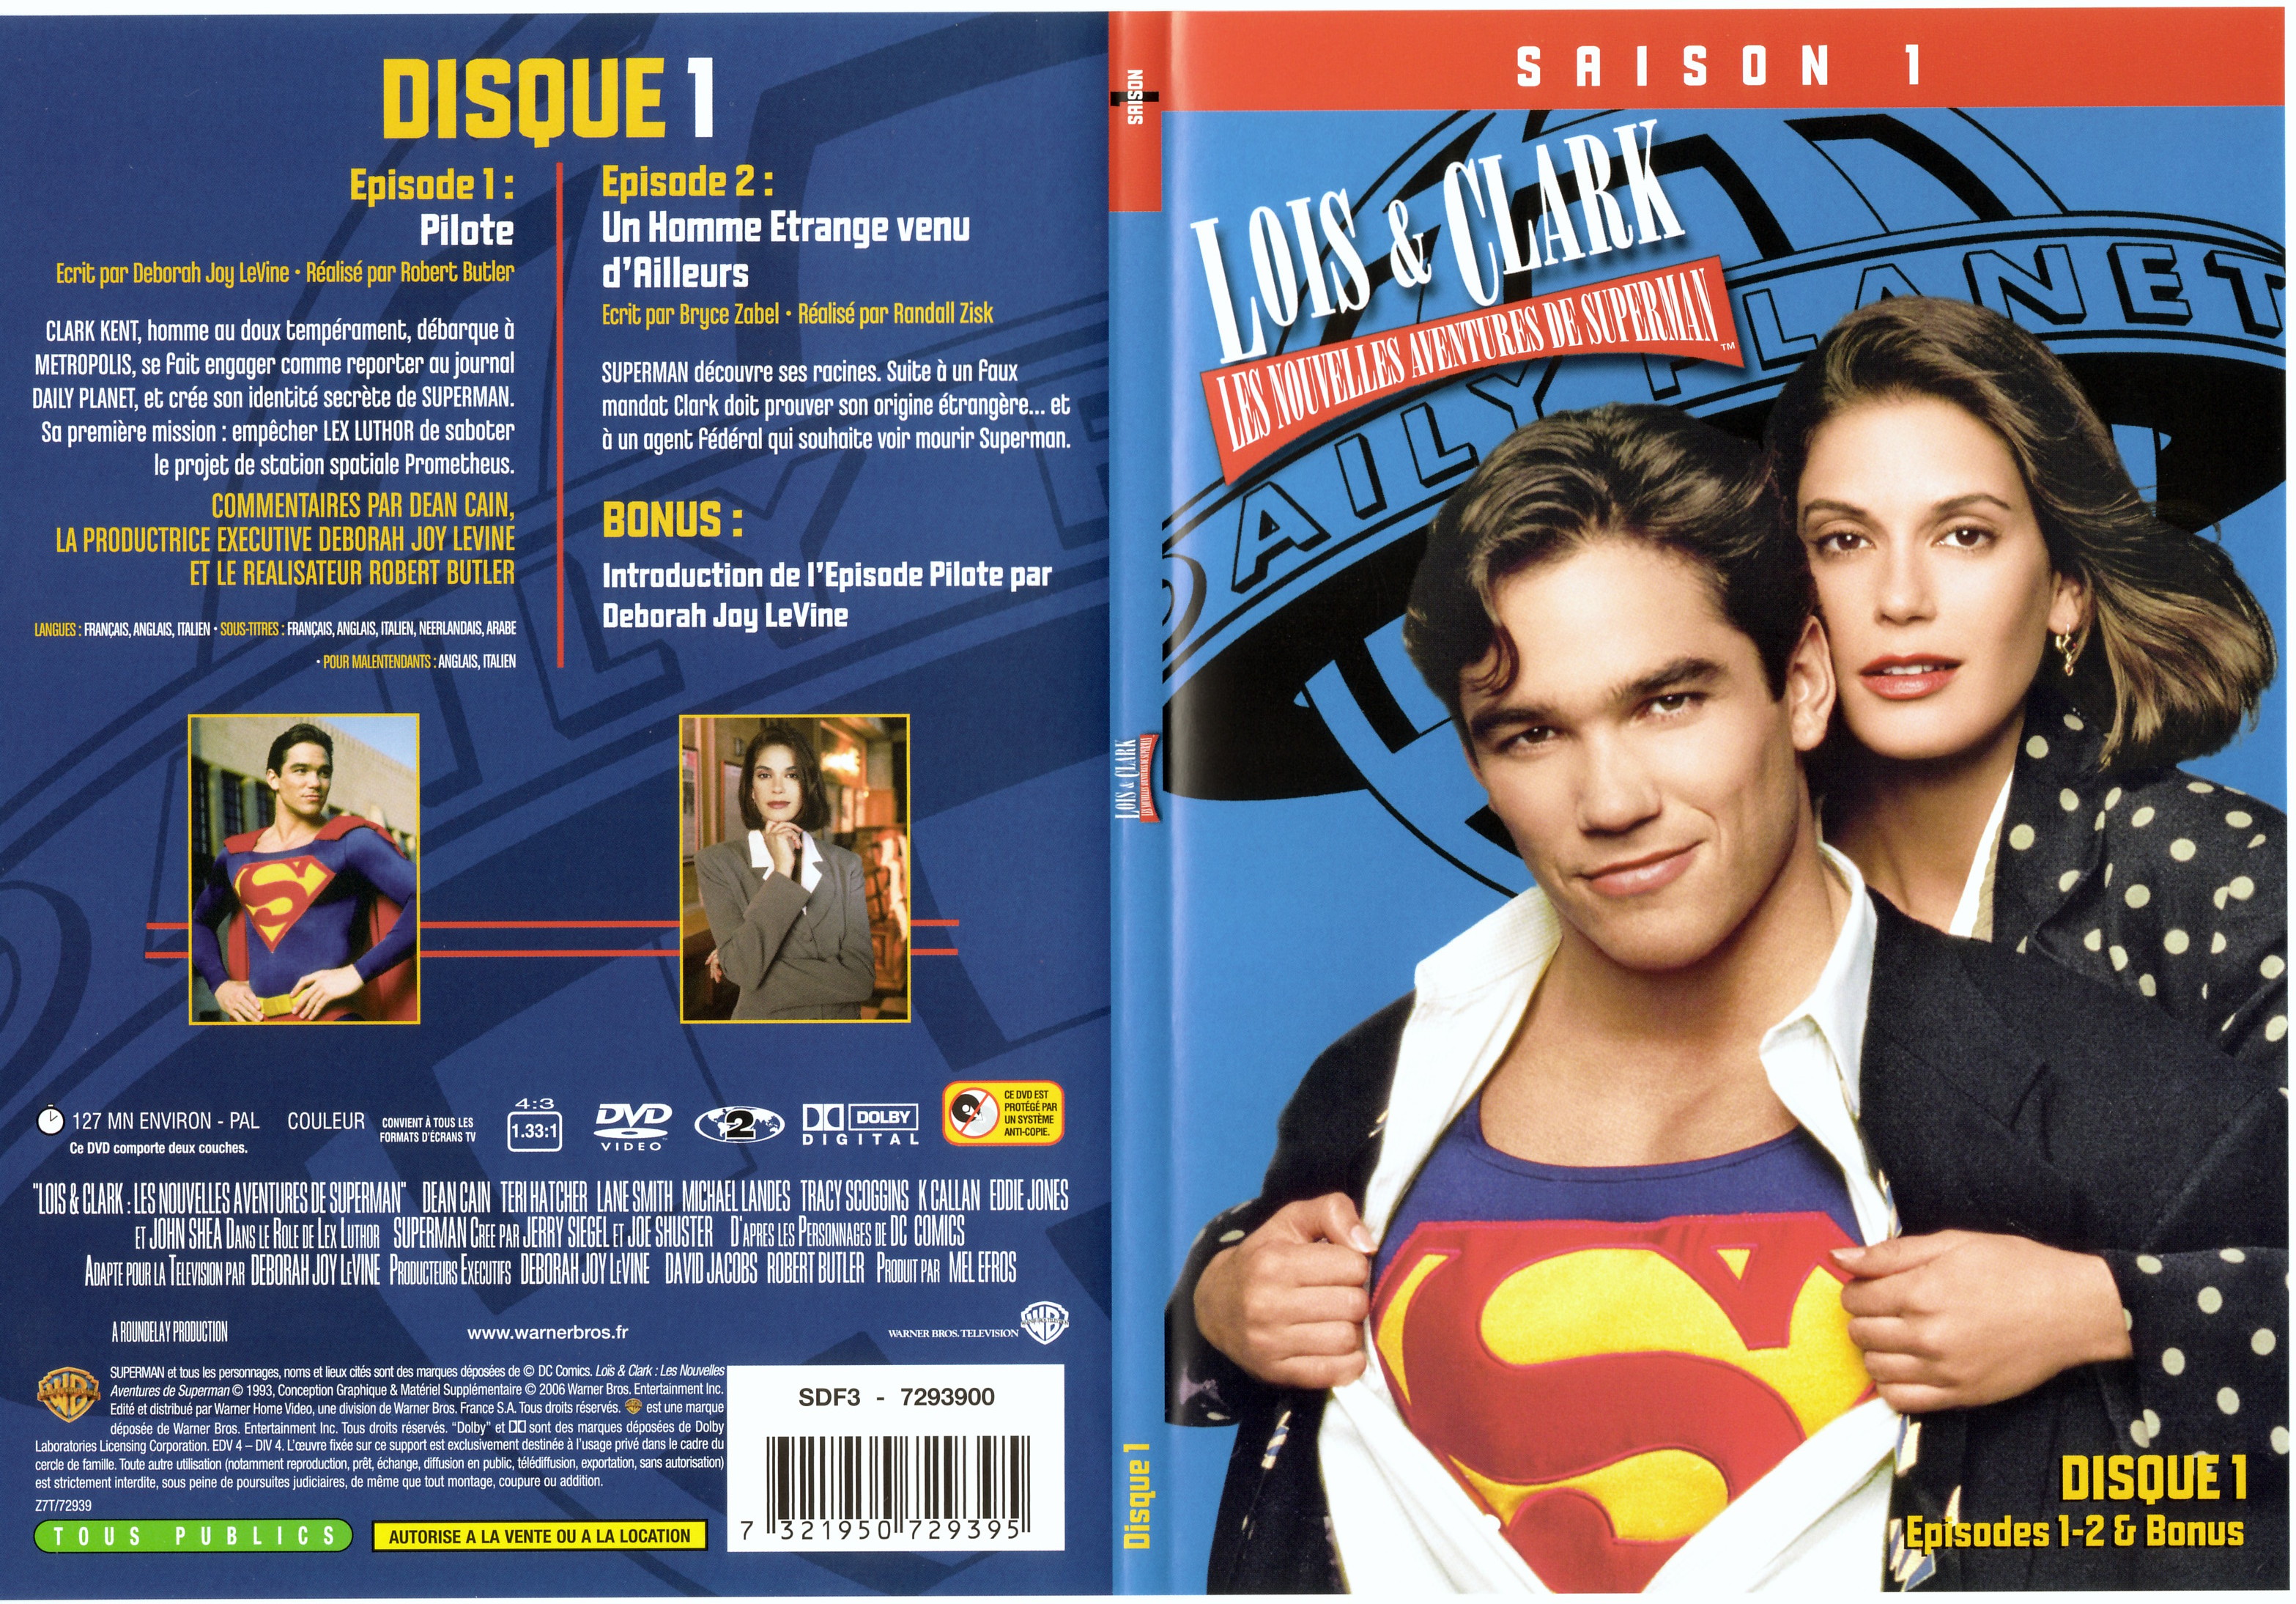 Jaquette DVD Lois et Clark Saison 1 vol 1